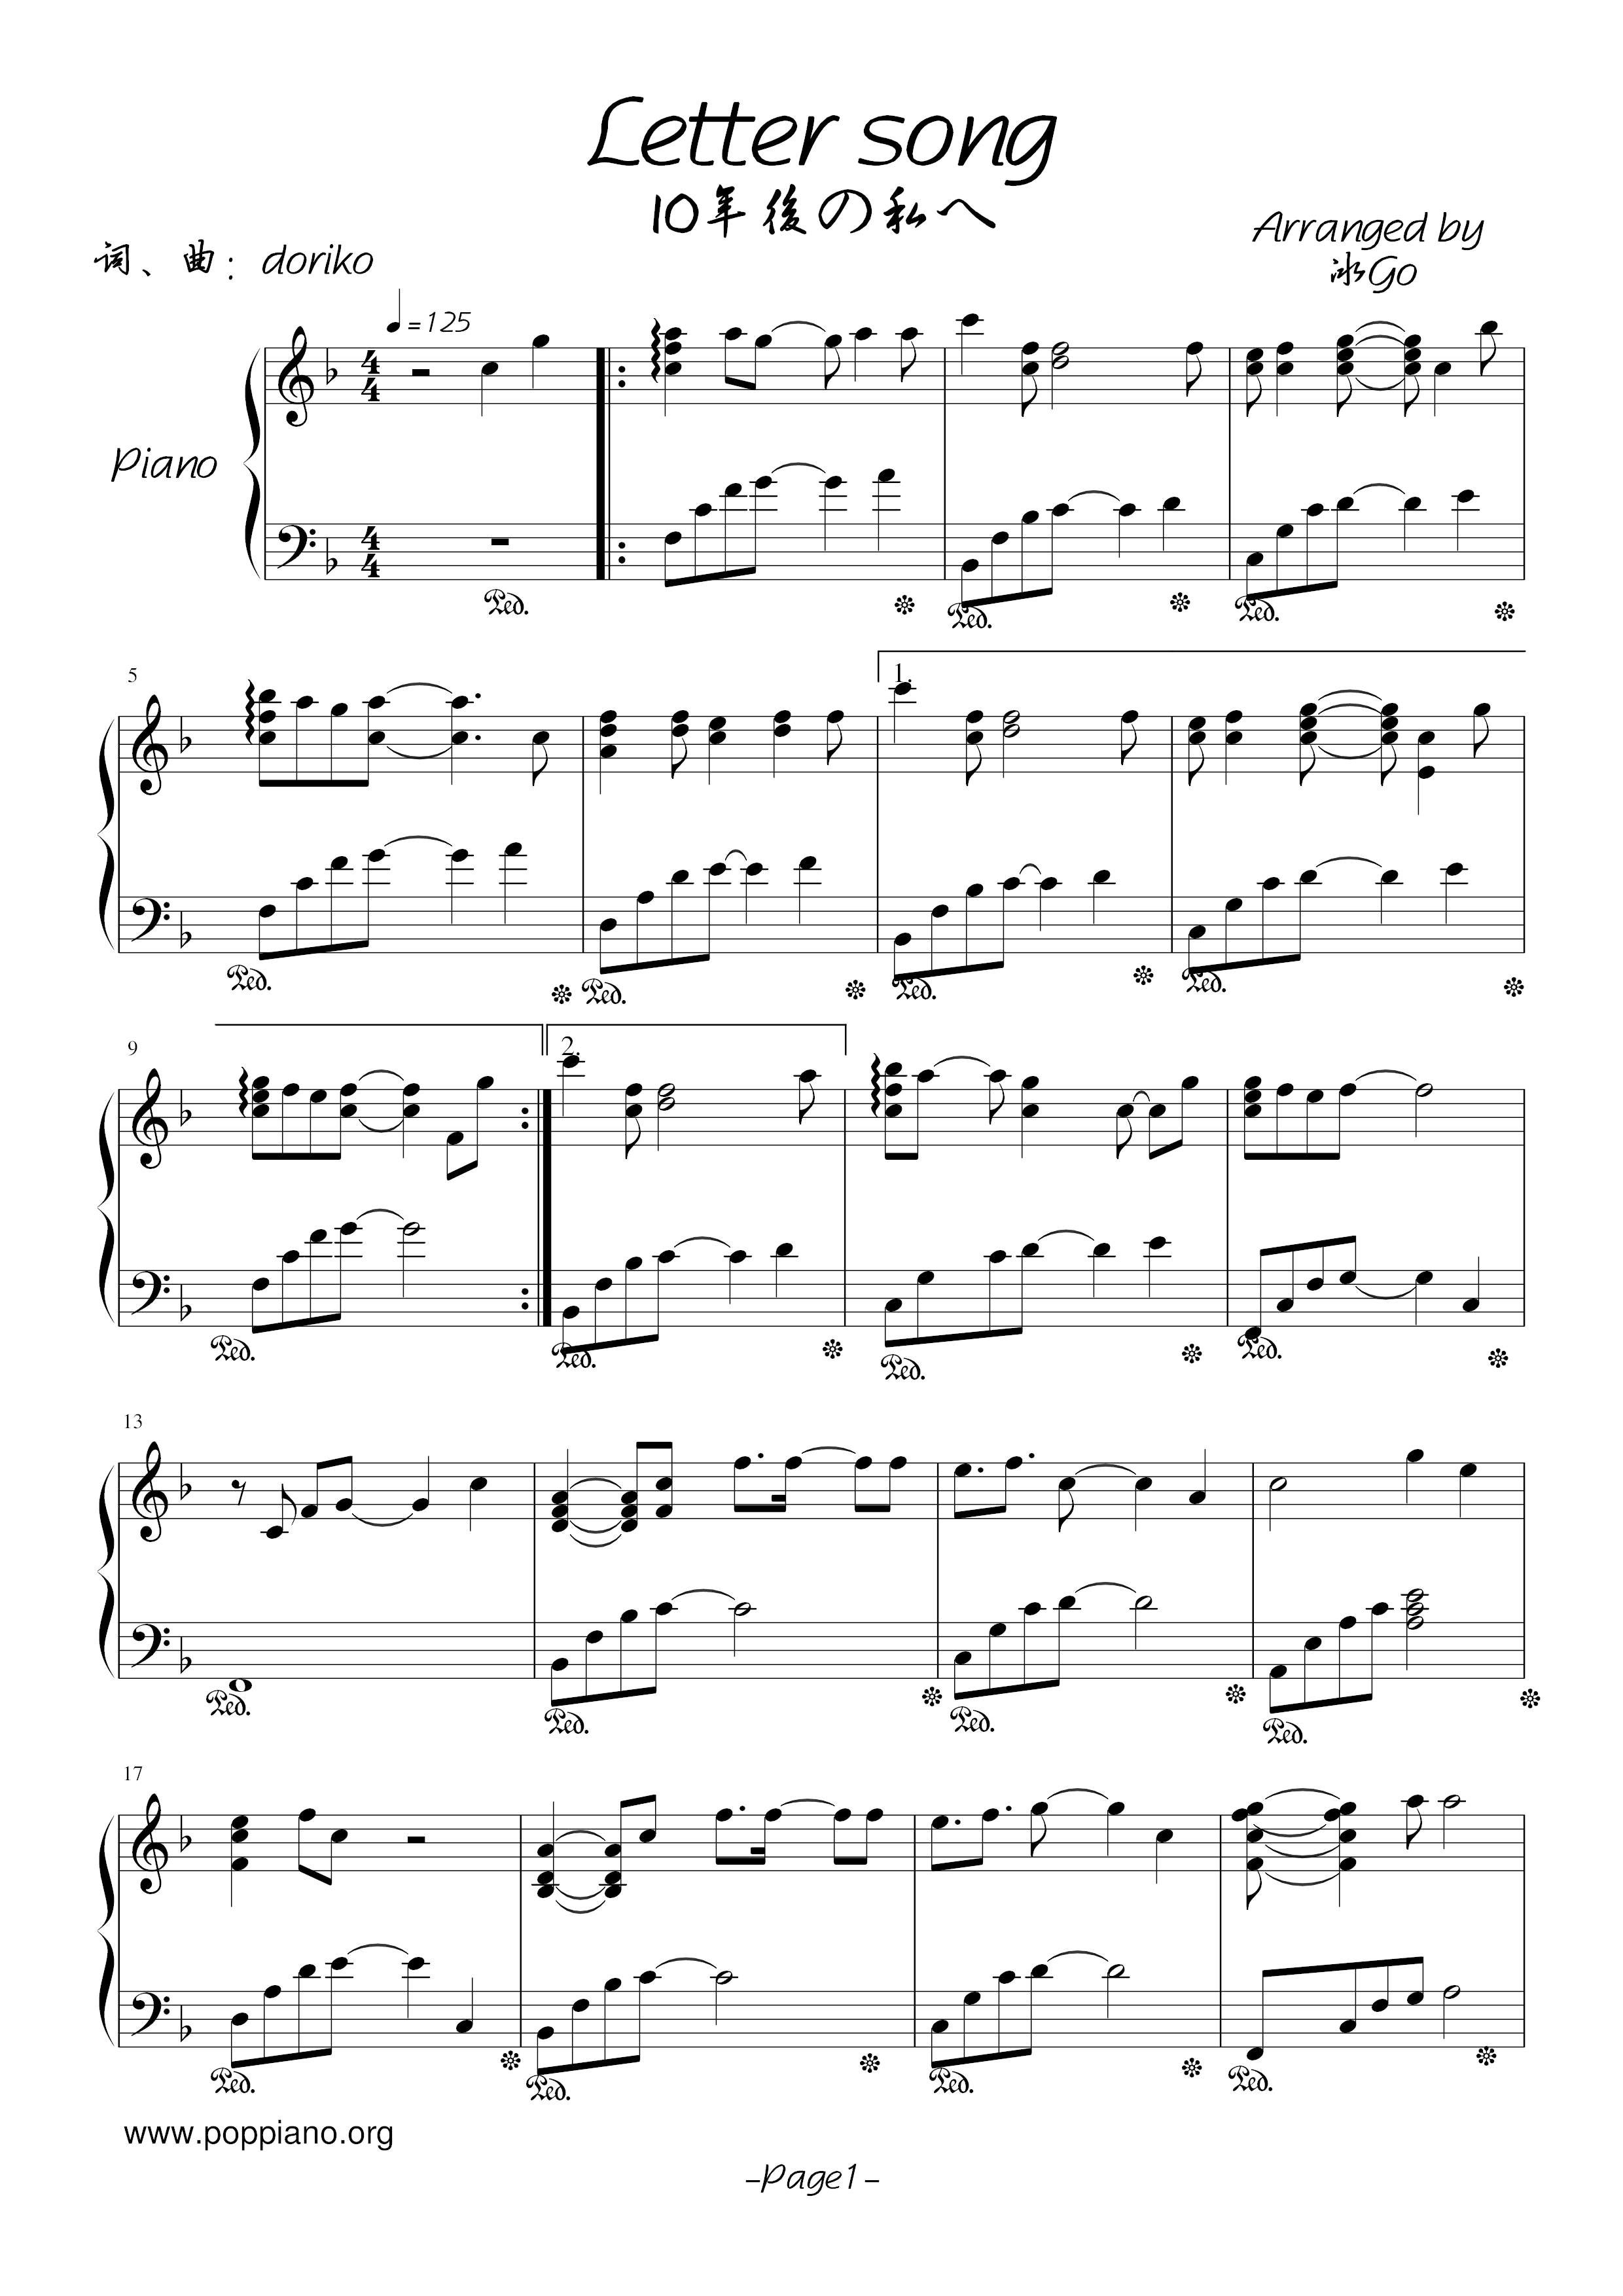 Letter Song Score